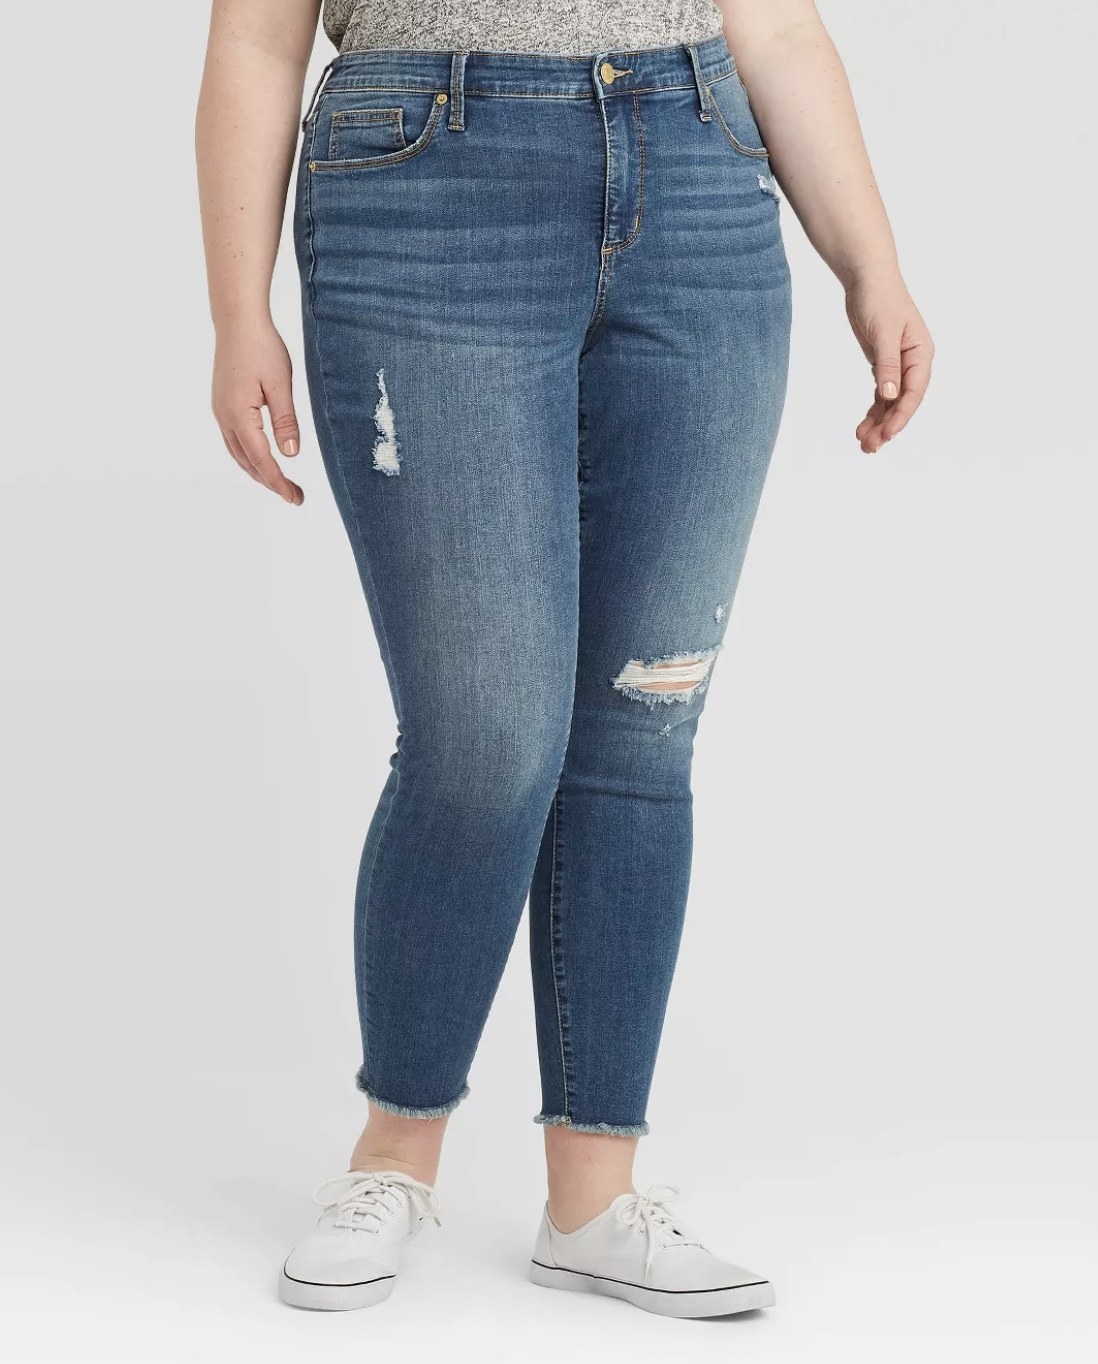 Model in the skinny jeans